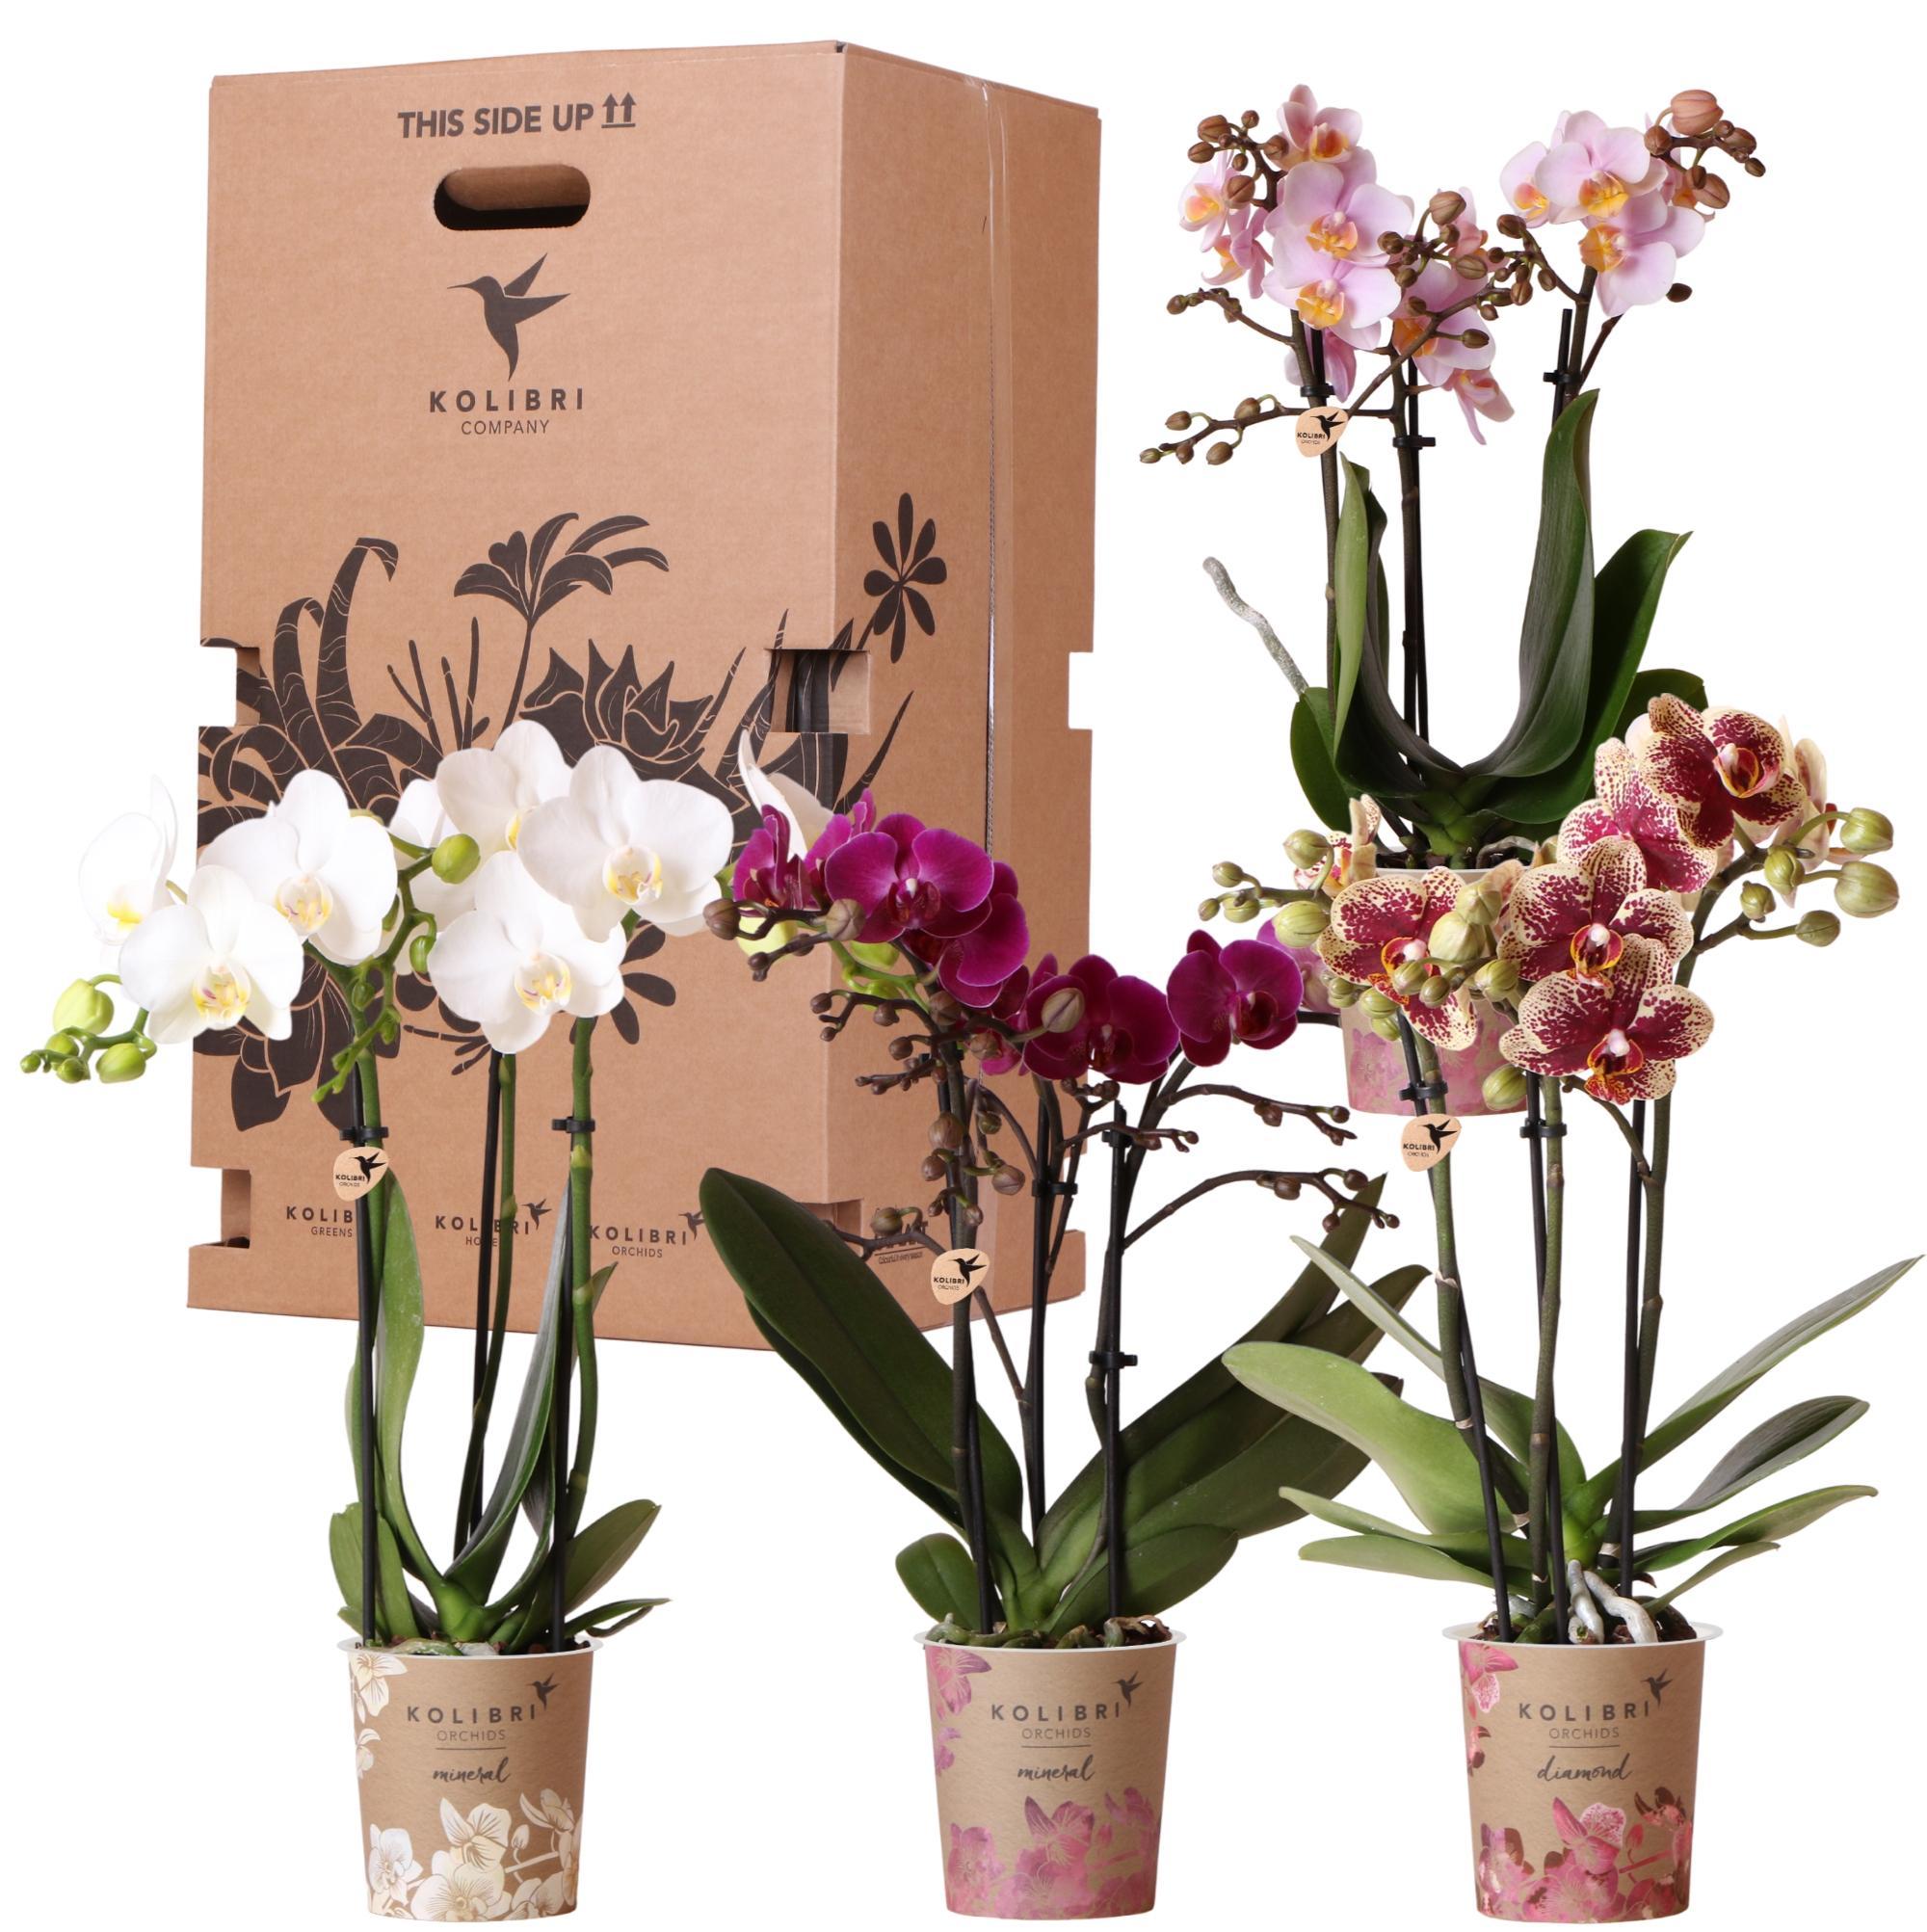 kolibriorchids Kolibri Orchids - Orchidées Kolibri - mélange de boîte surprise - avec 4 orchidées différentes